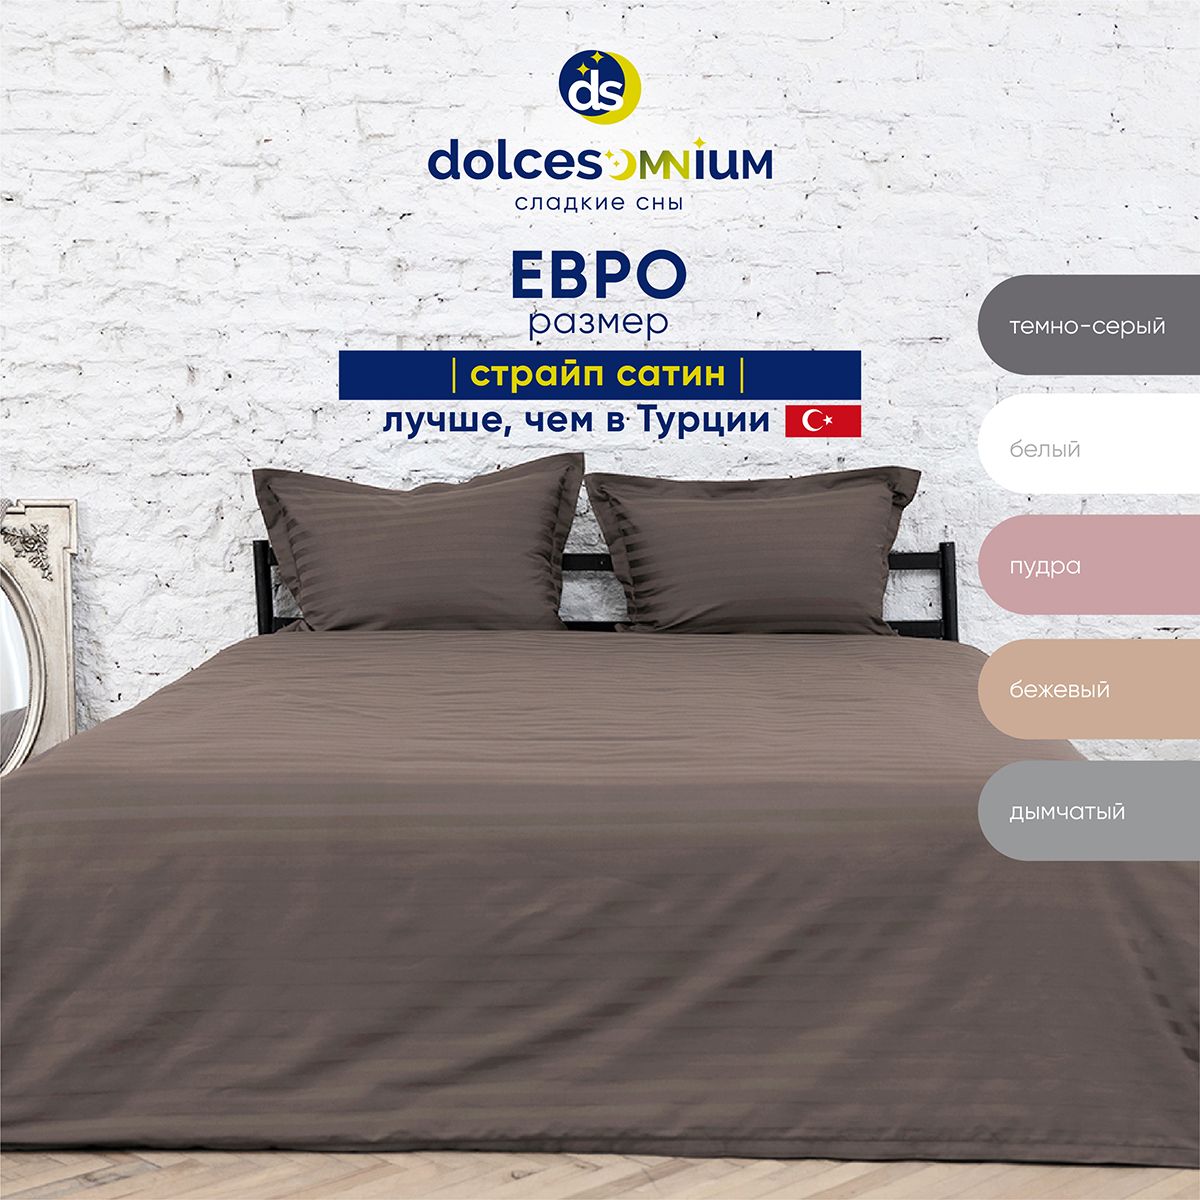 Комплект постельного белья DolceSomnium евро 817/0031668\3420